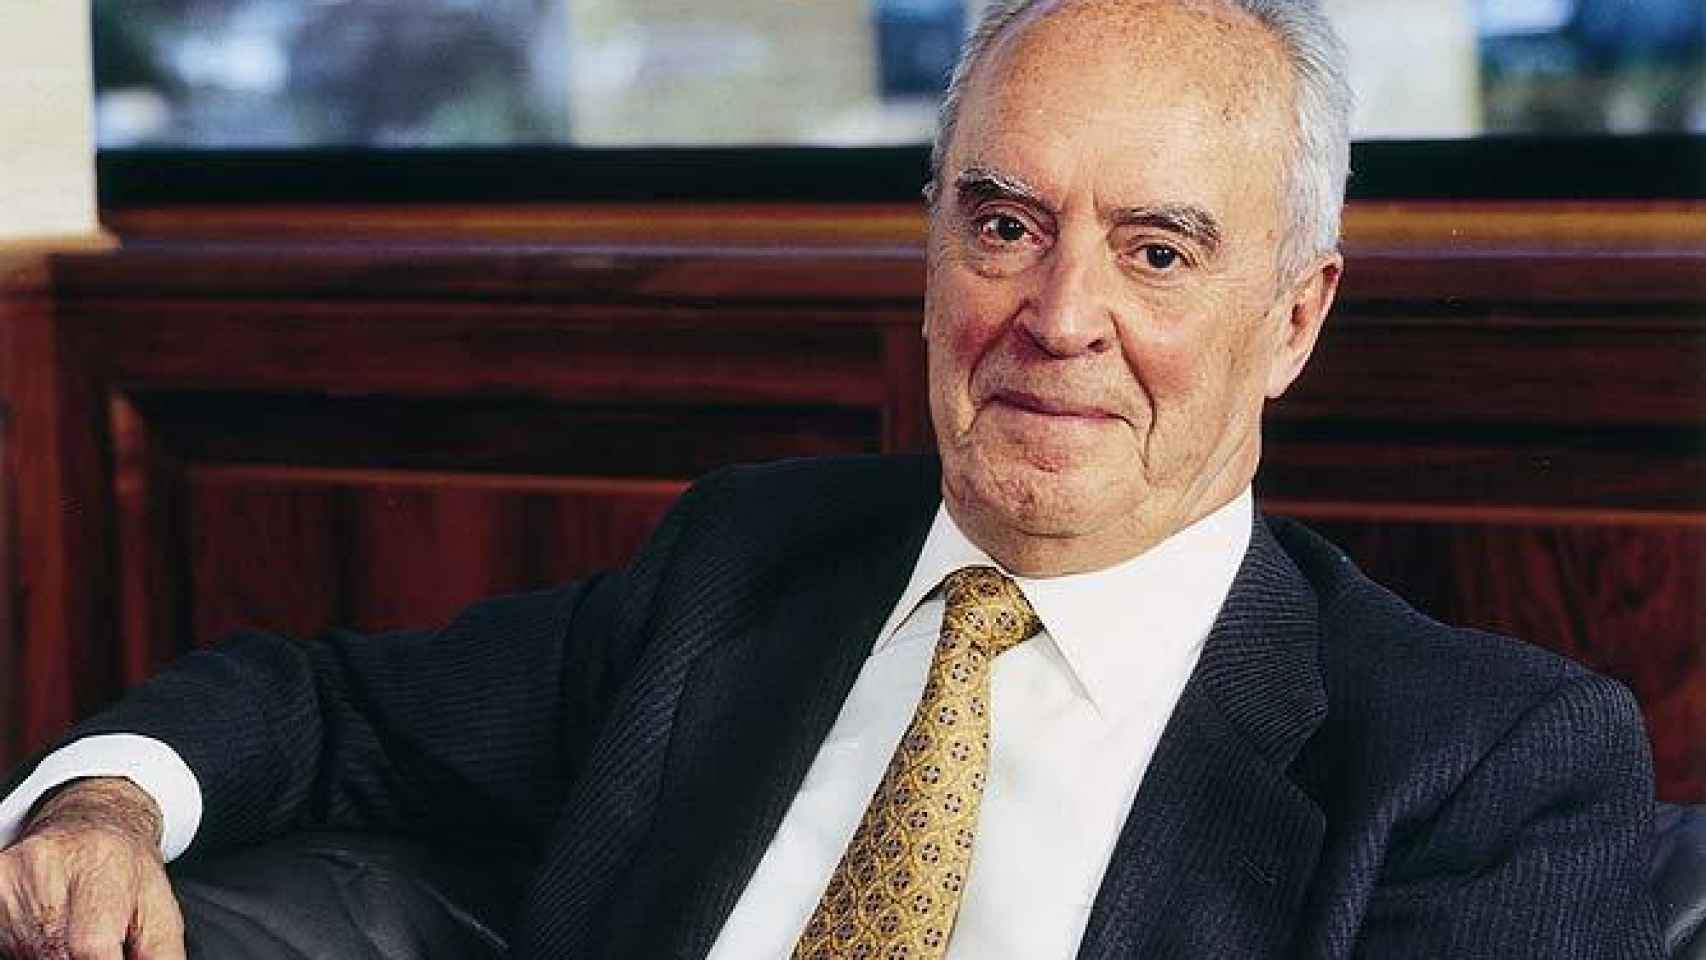 El padre de Rafael del Pino Calvo-Sotelo es el segundo de los hijos del fundador de Ferrovial, Rafael del Pino y Moreno, en la imagen.